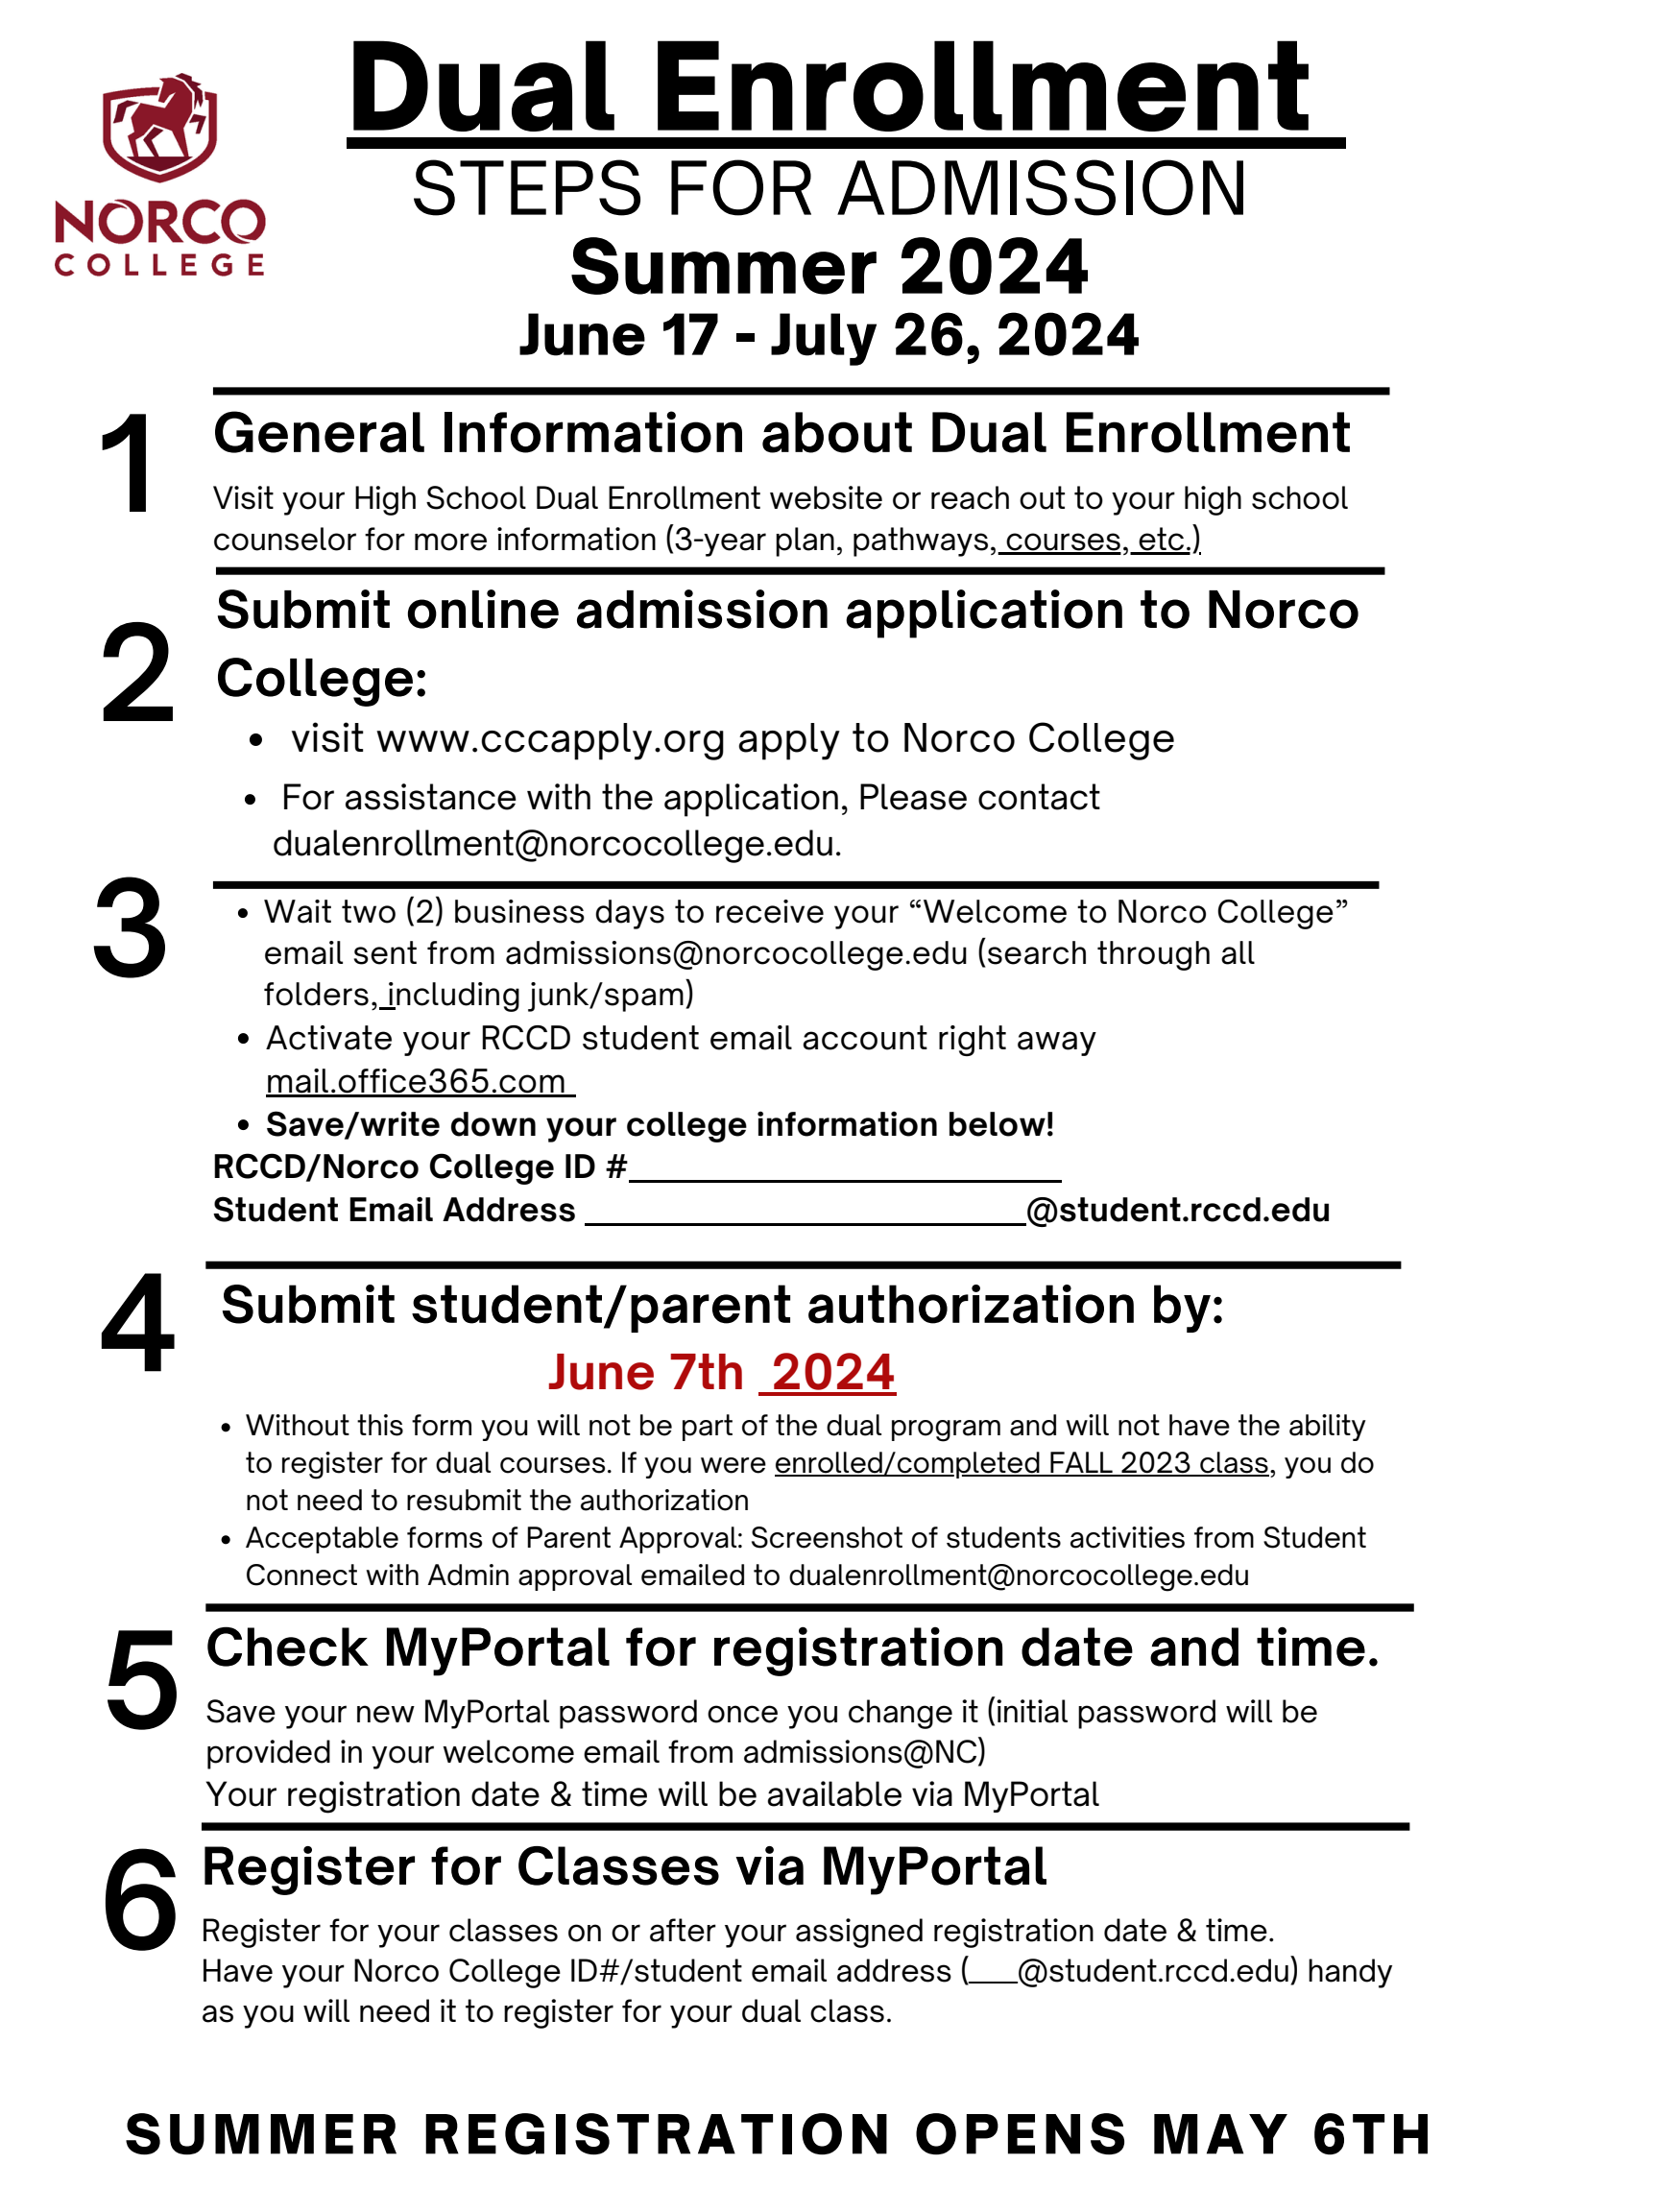 Dual Enrollment Steps for Admission - Summer 2024